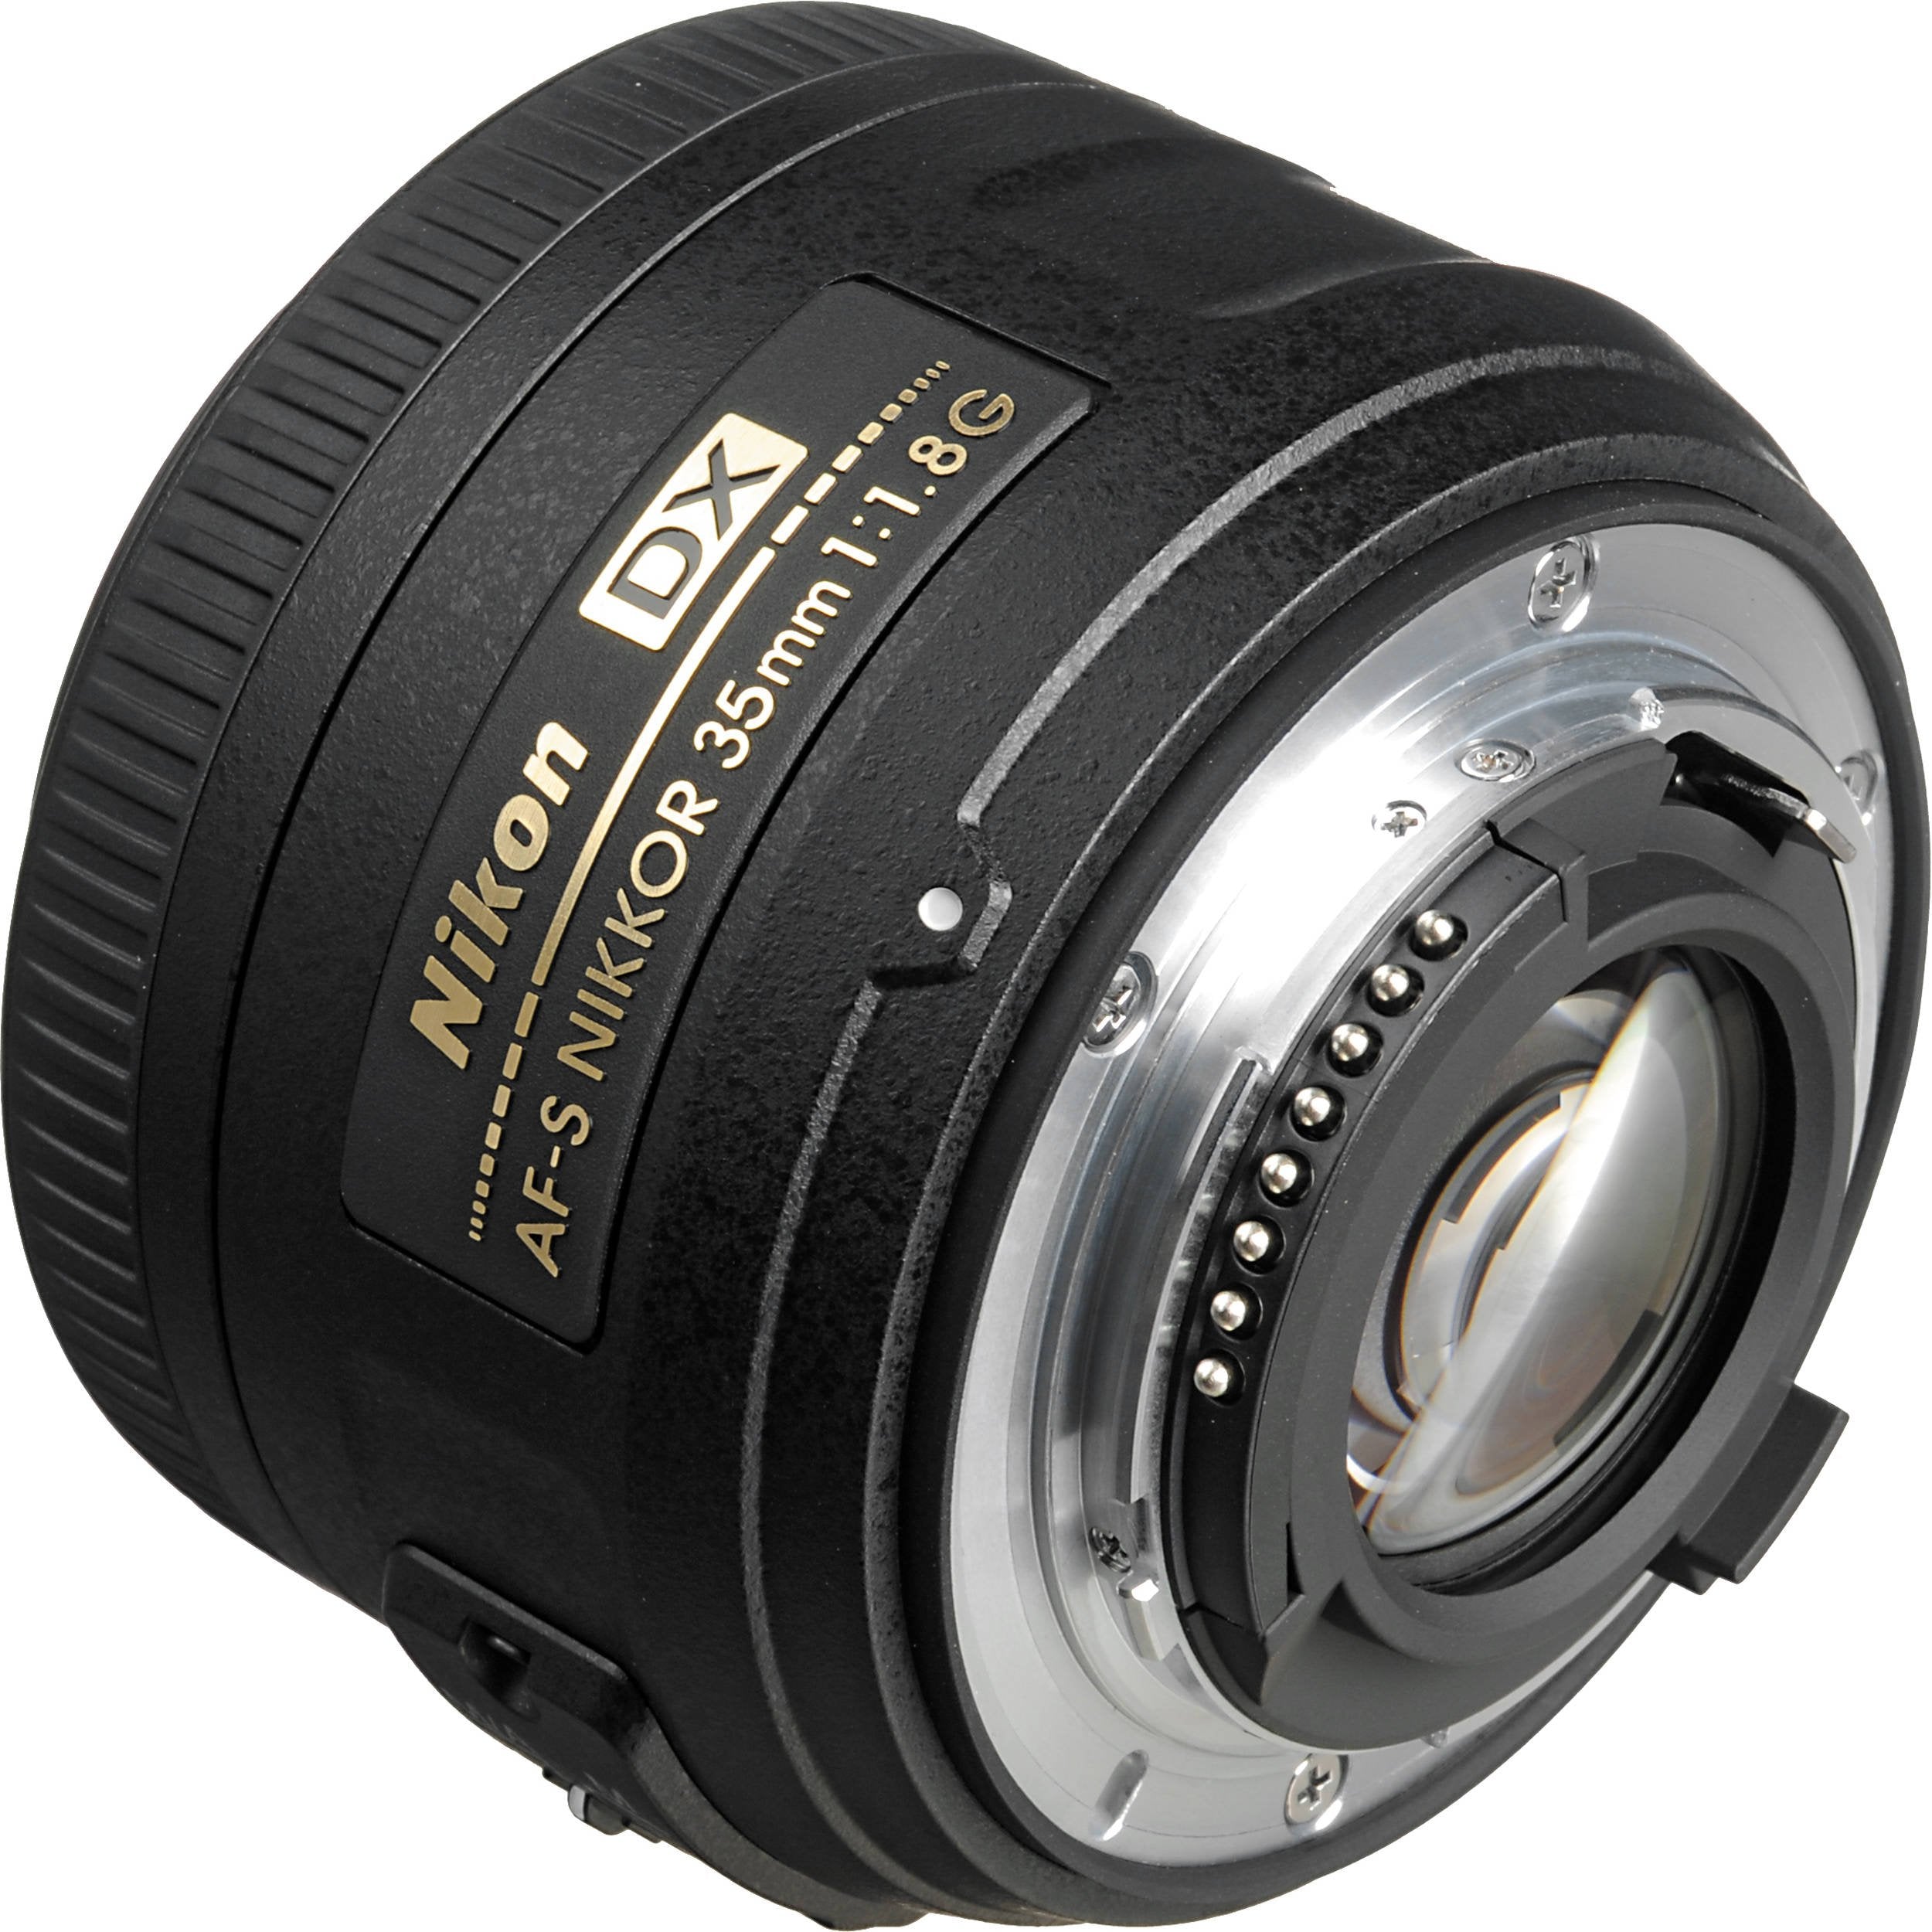 Nikon AF-S DX NIKKOR 35mm f/1.8G Lens + 4.5 inch Vivitar Premium Lens Case + Vivitar Graduated Color Filter Kit + 3pcs UV Lens Filter Kit + Cleaning Kit